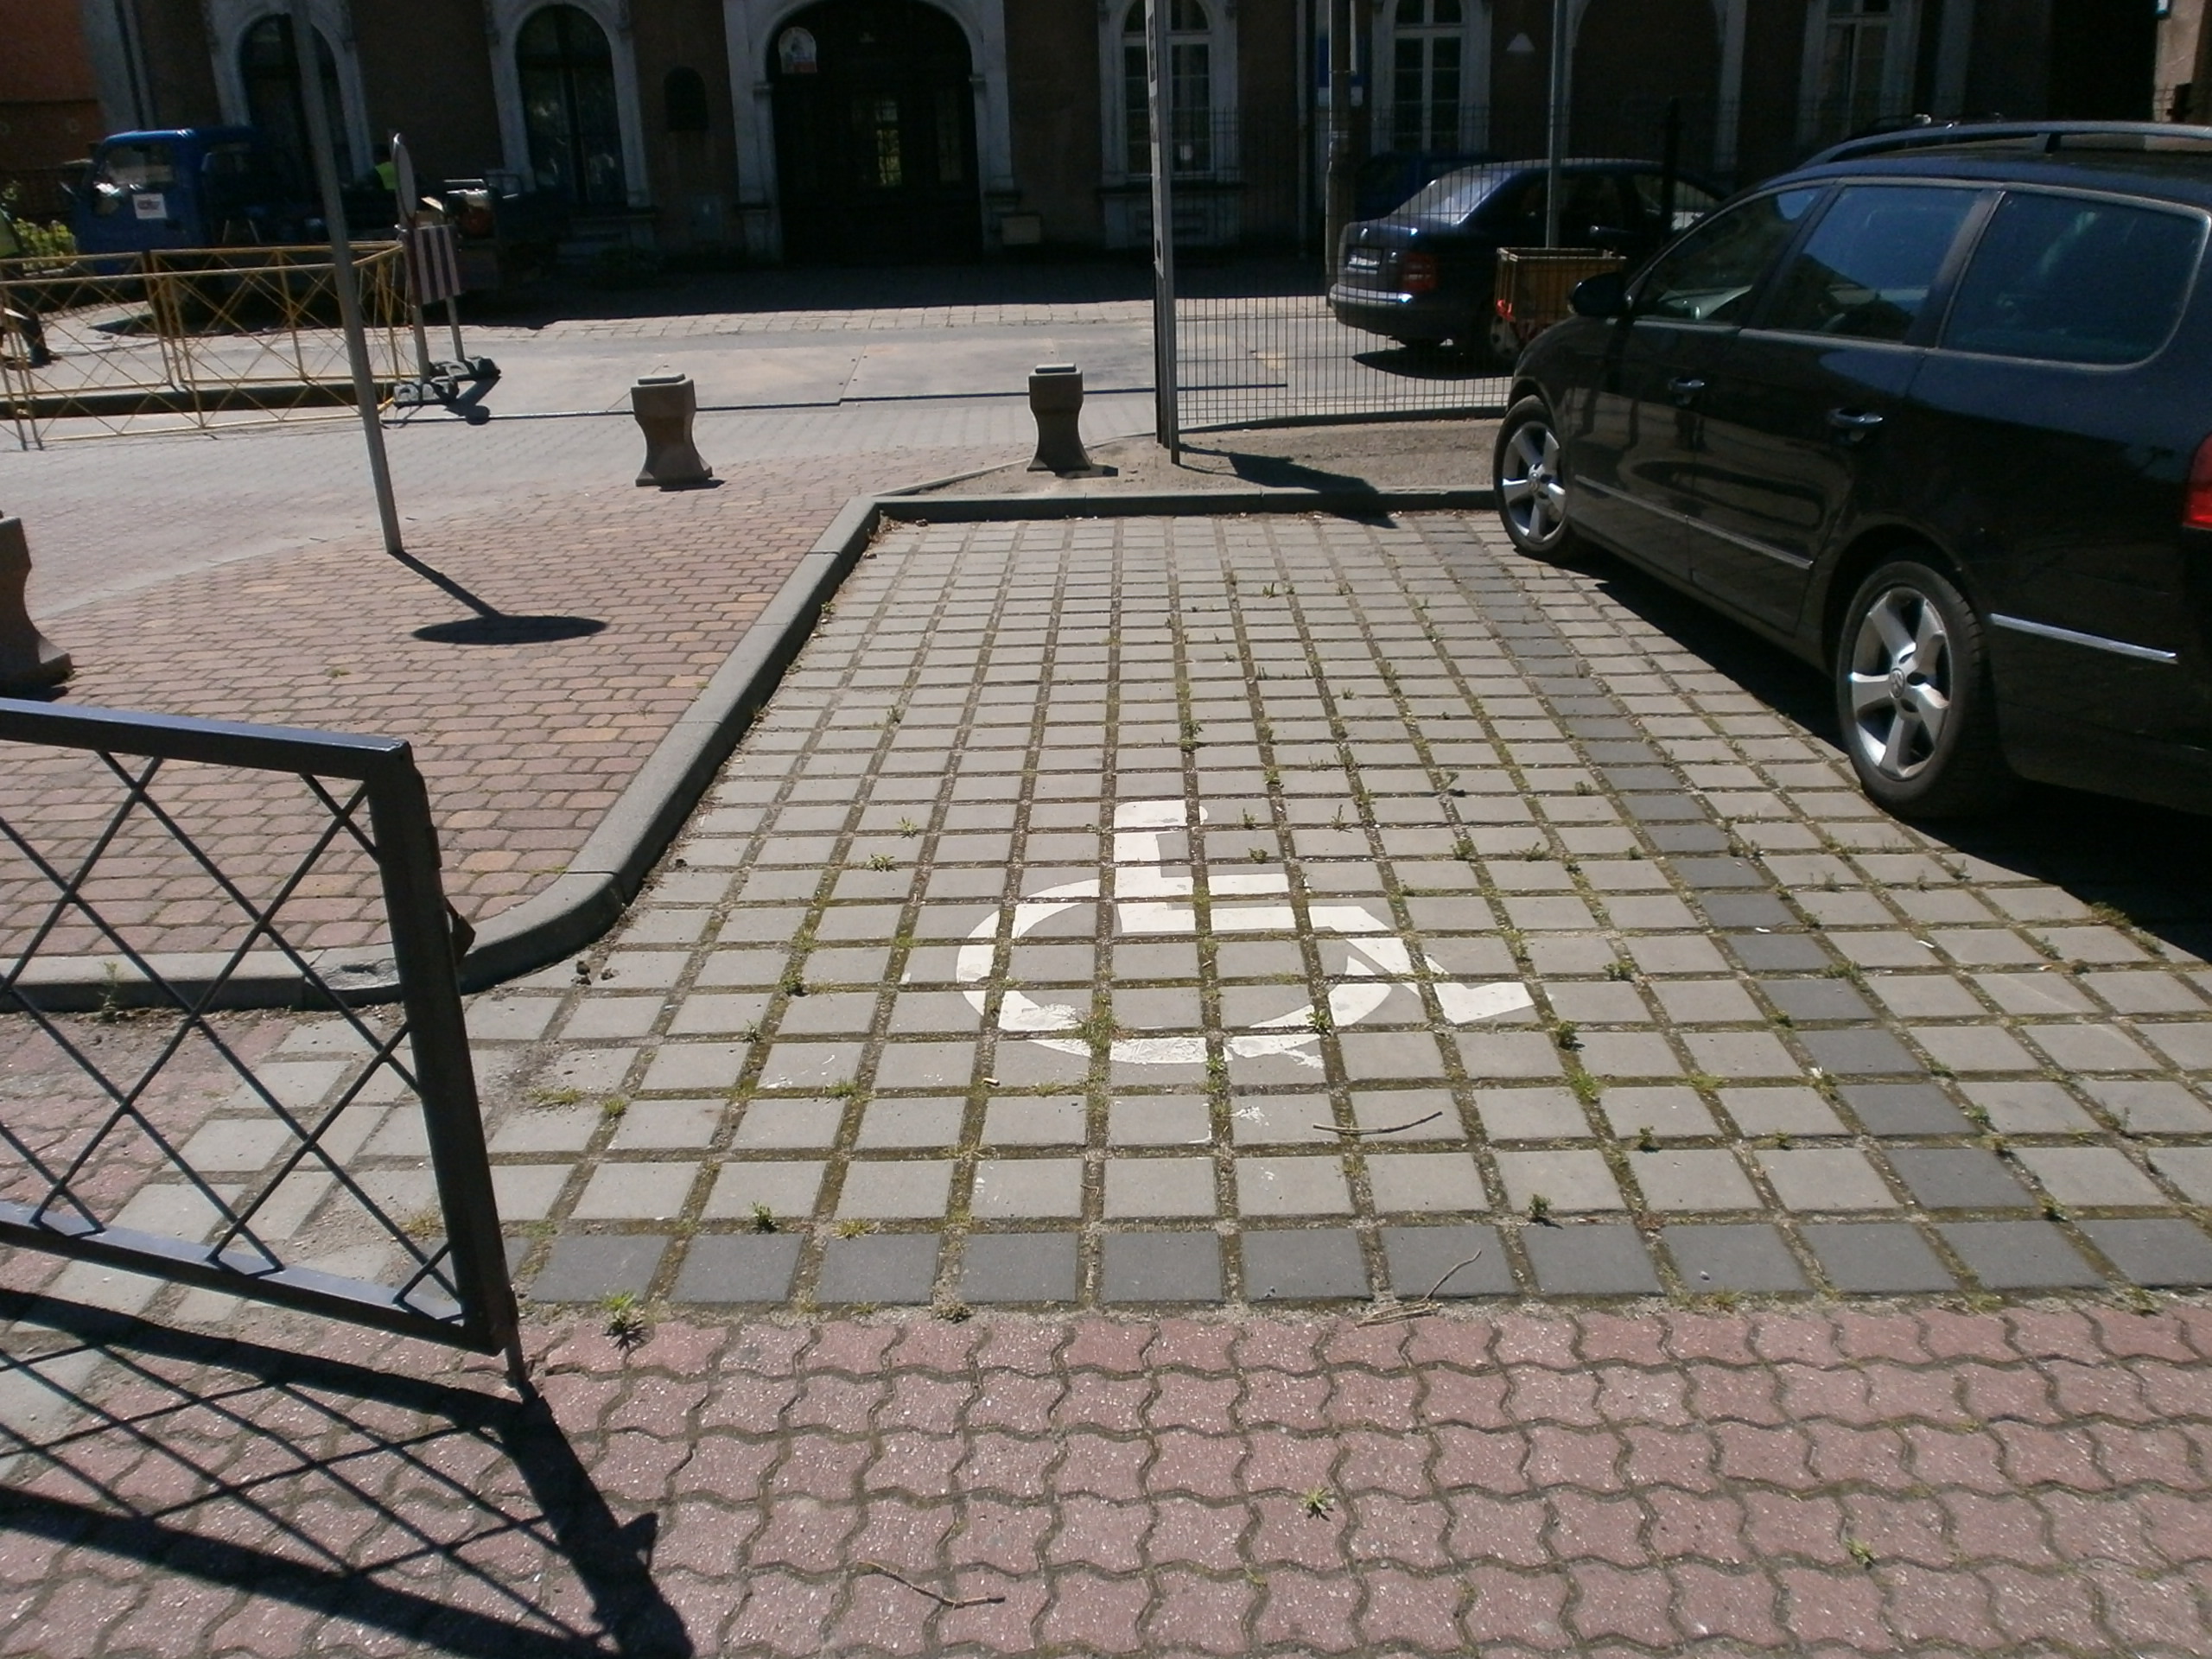 parking katedralny - żle oznaczone i za małe miejsce